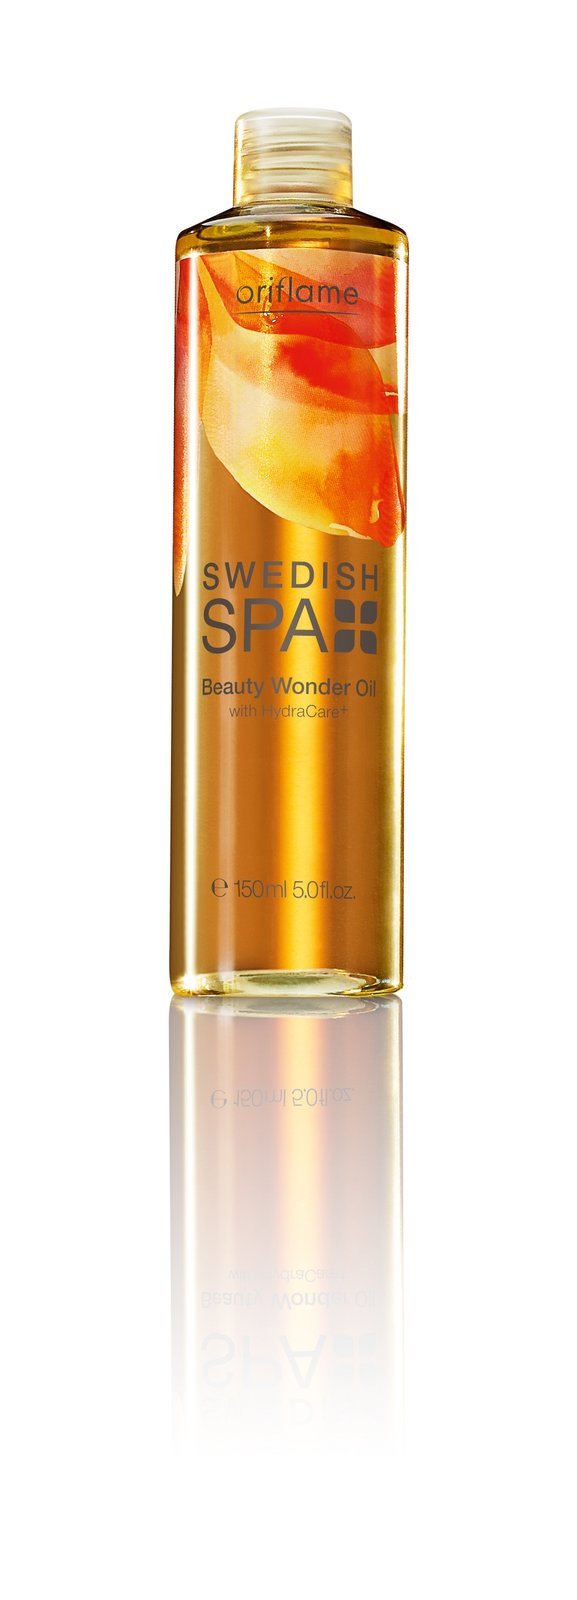 Chytrý olej pro krásu Swedish Spa Oriflame, 229 Kč